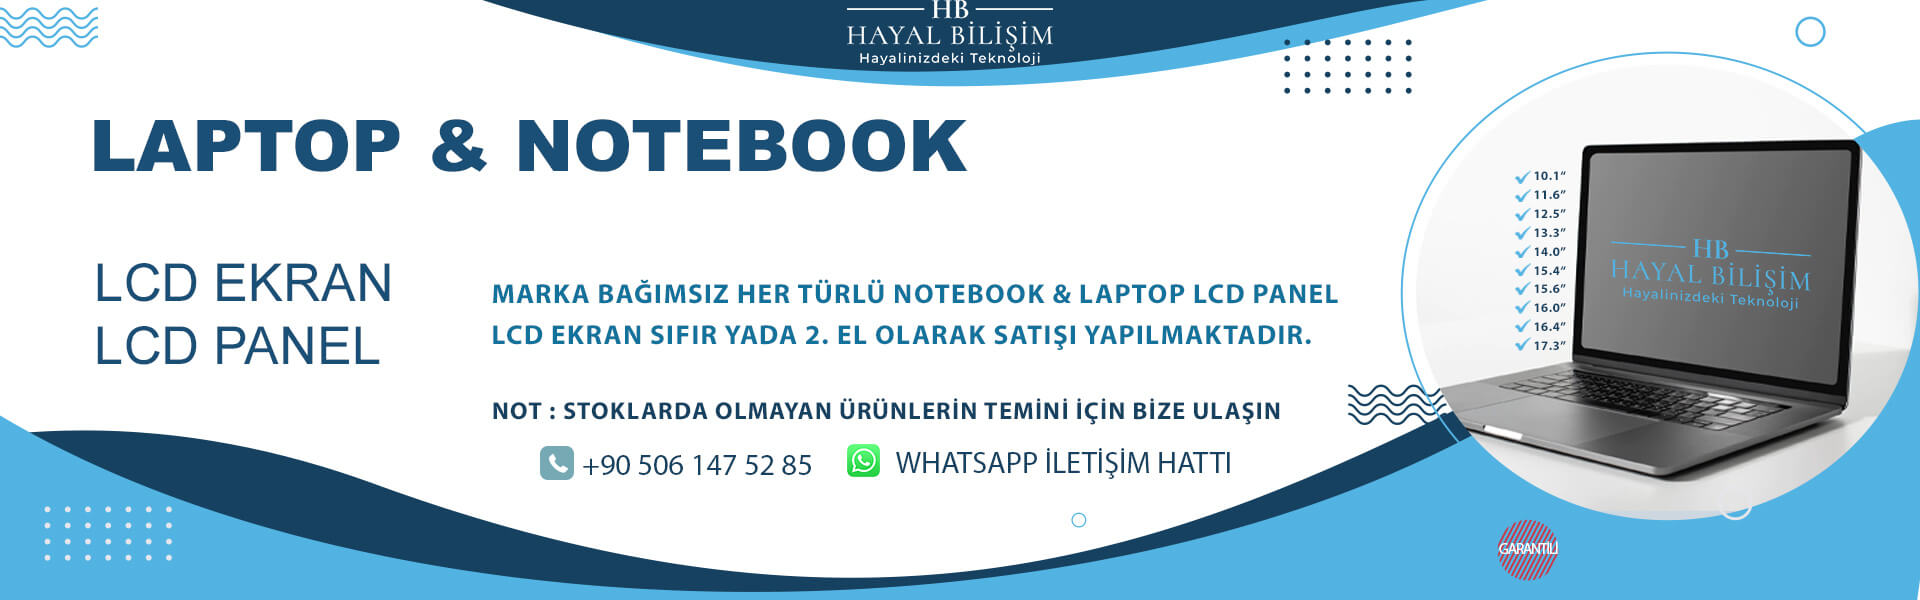 Hayal Bilişim Laptop Notebook LCD Panel